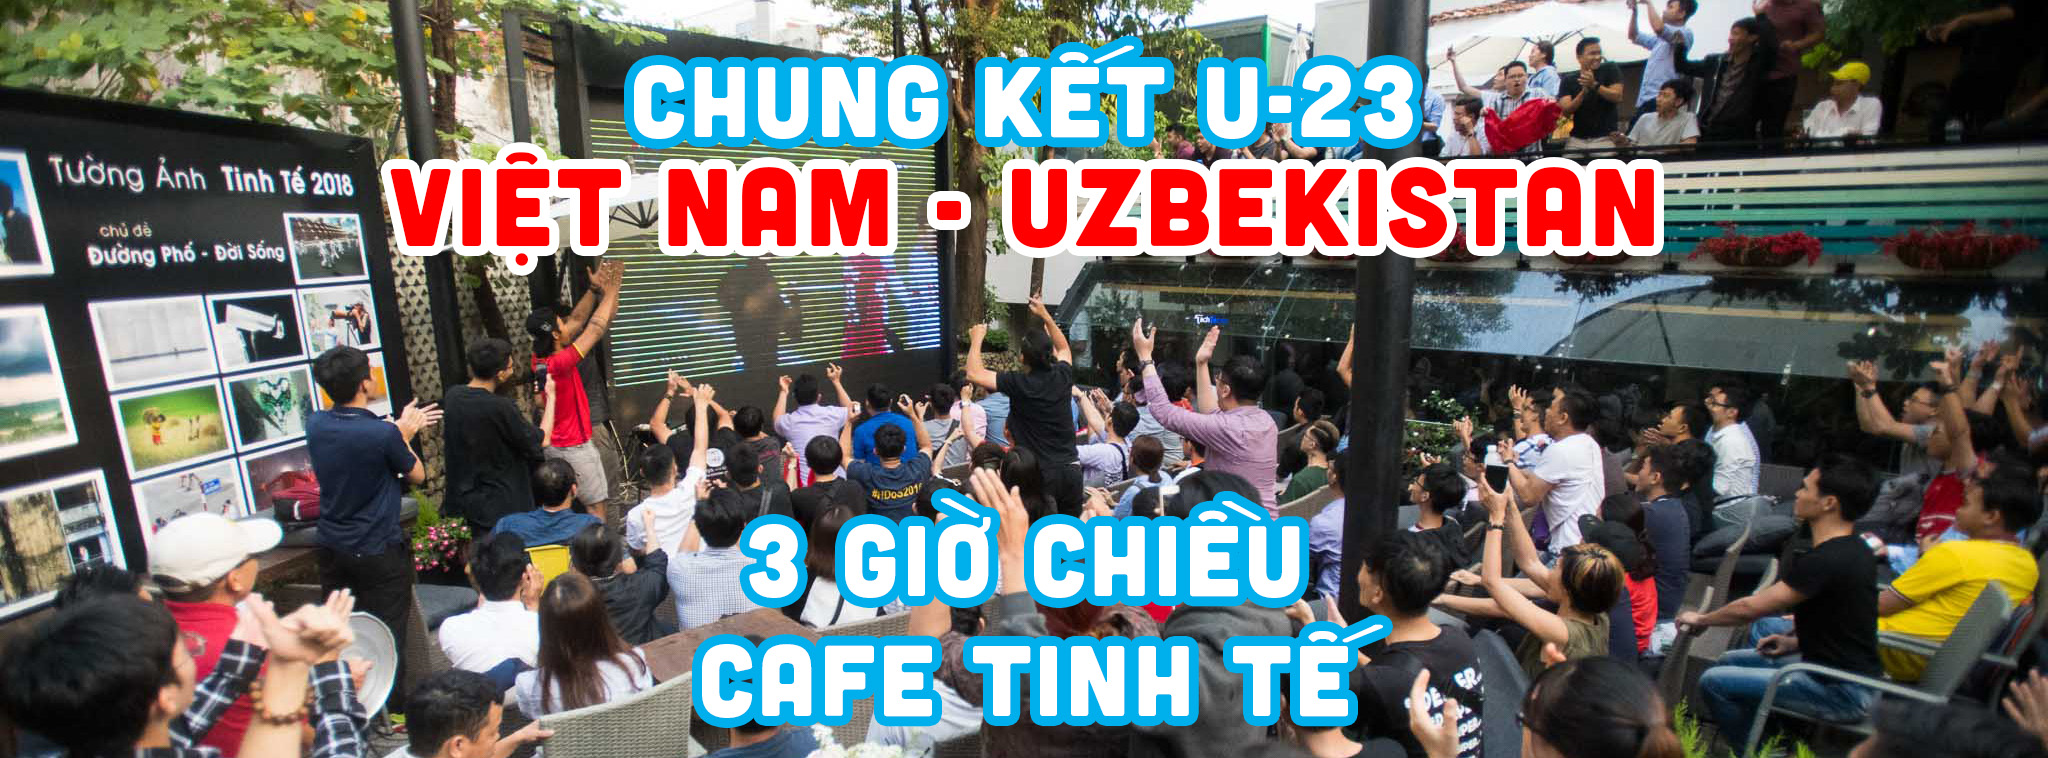 Xem chung kết AFC U-23 Việt Nam - Uzbekistan: 3 giờ chiều mai tại cafe Tinh Tế, màn hình LED 200"